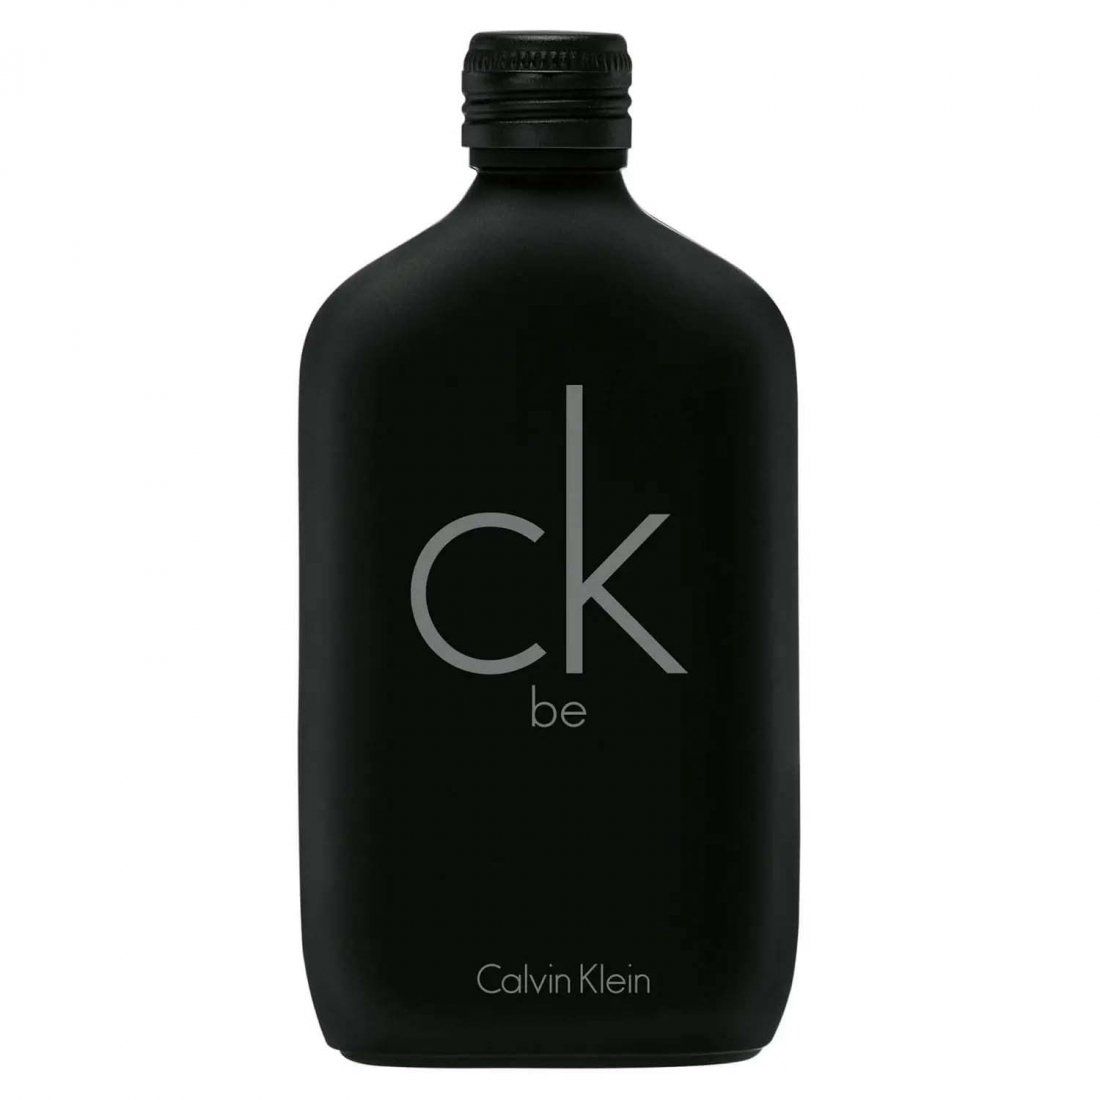 Calvin Klein - Eau de toilette 'CK Be' - 200 ml